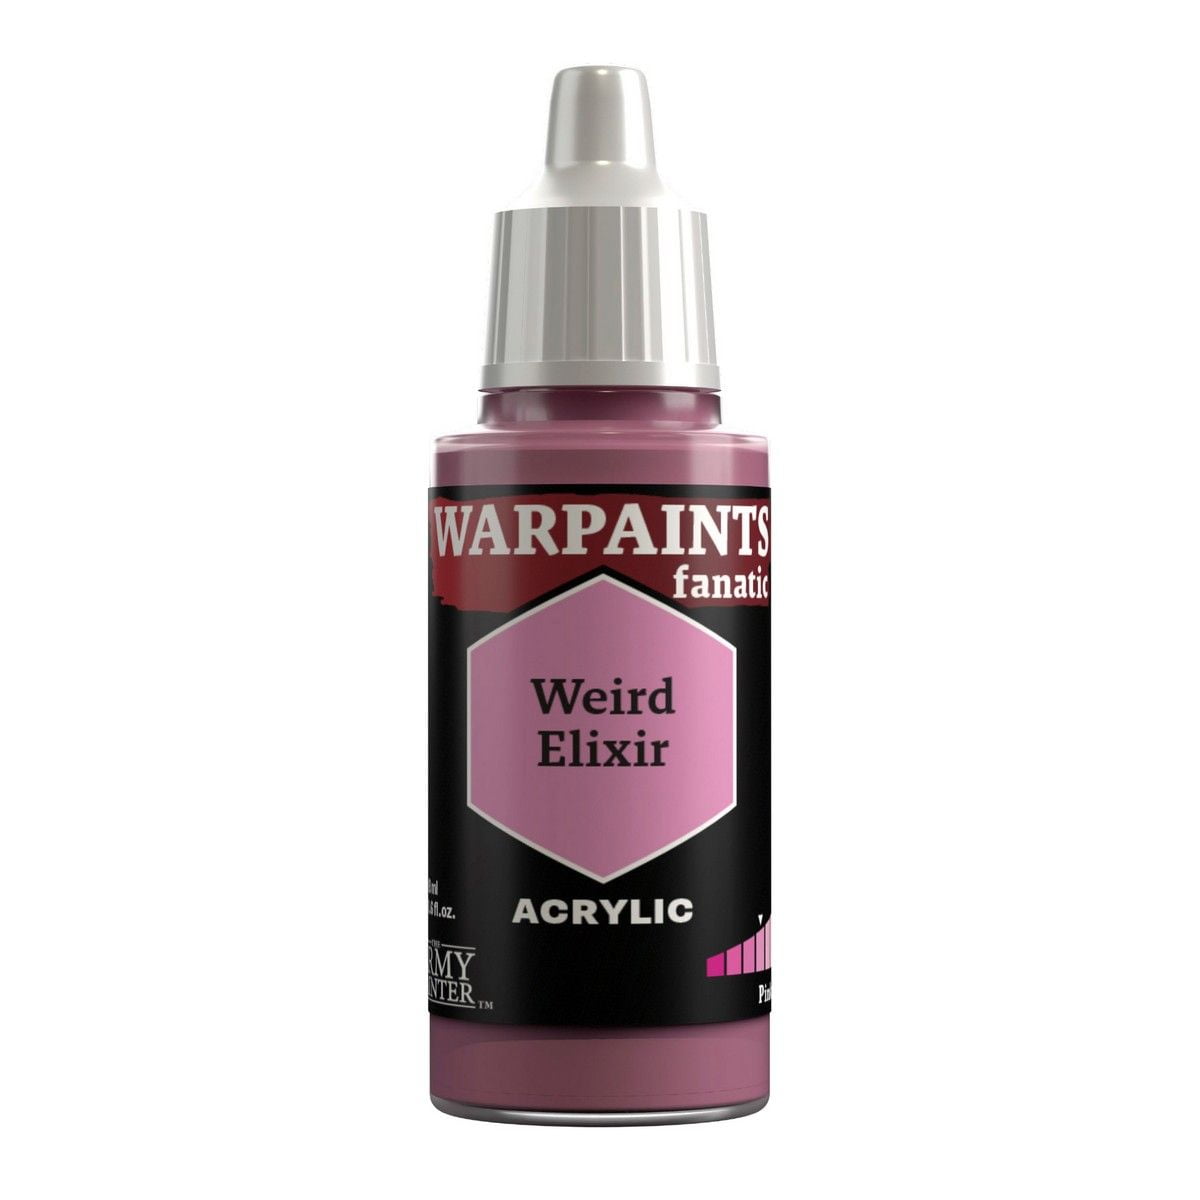 Warpaints Fanatic: Weird Elixir - 18ml